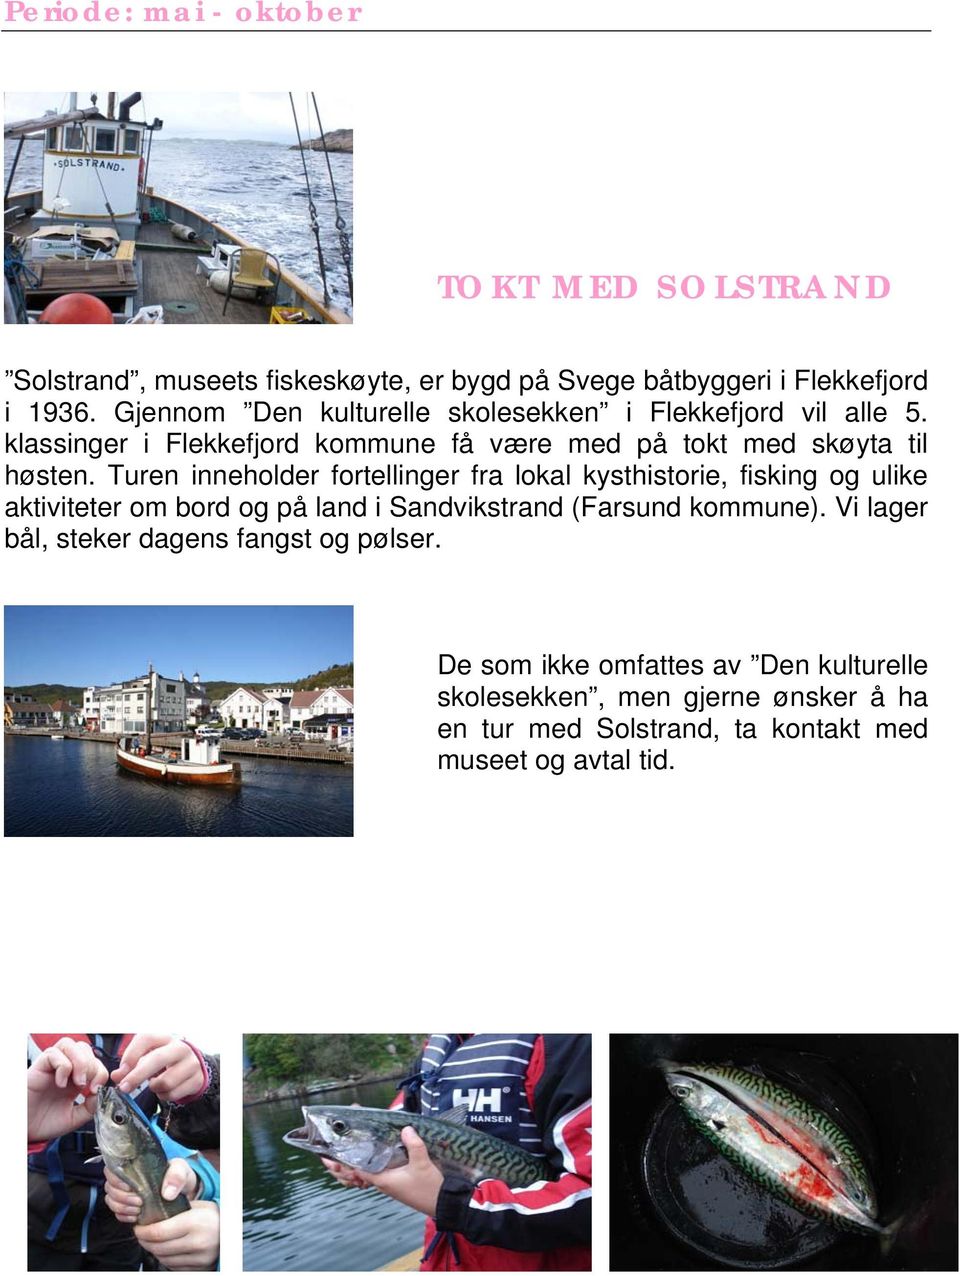 Turen inneholder fortellinger fra lokal kysthistorie, fisking og ulike aktiviteter om bord og på land i Sandvikstrand (Farsund kommune).